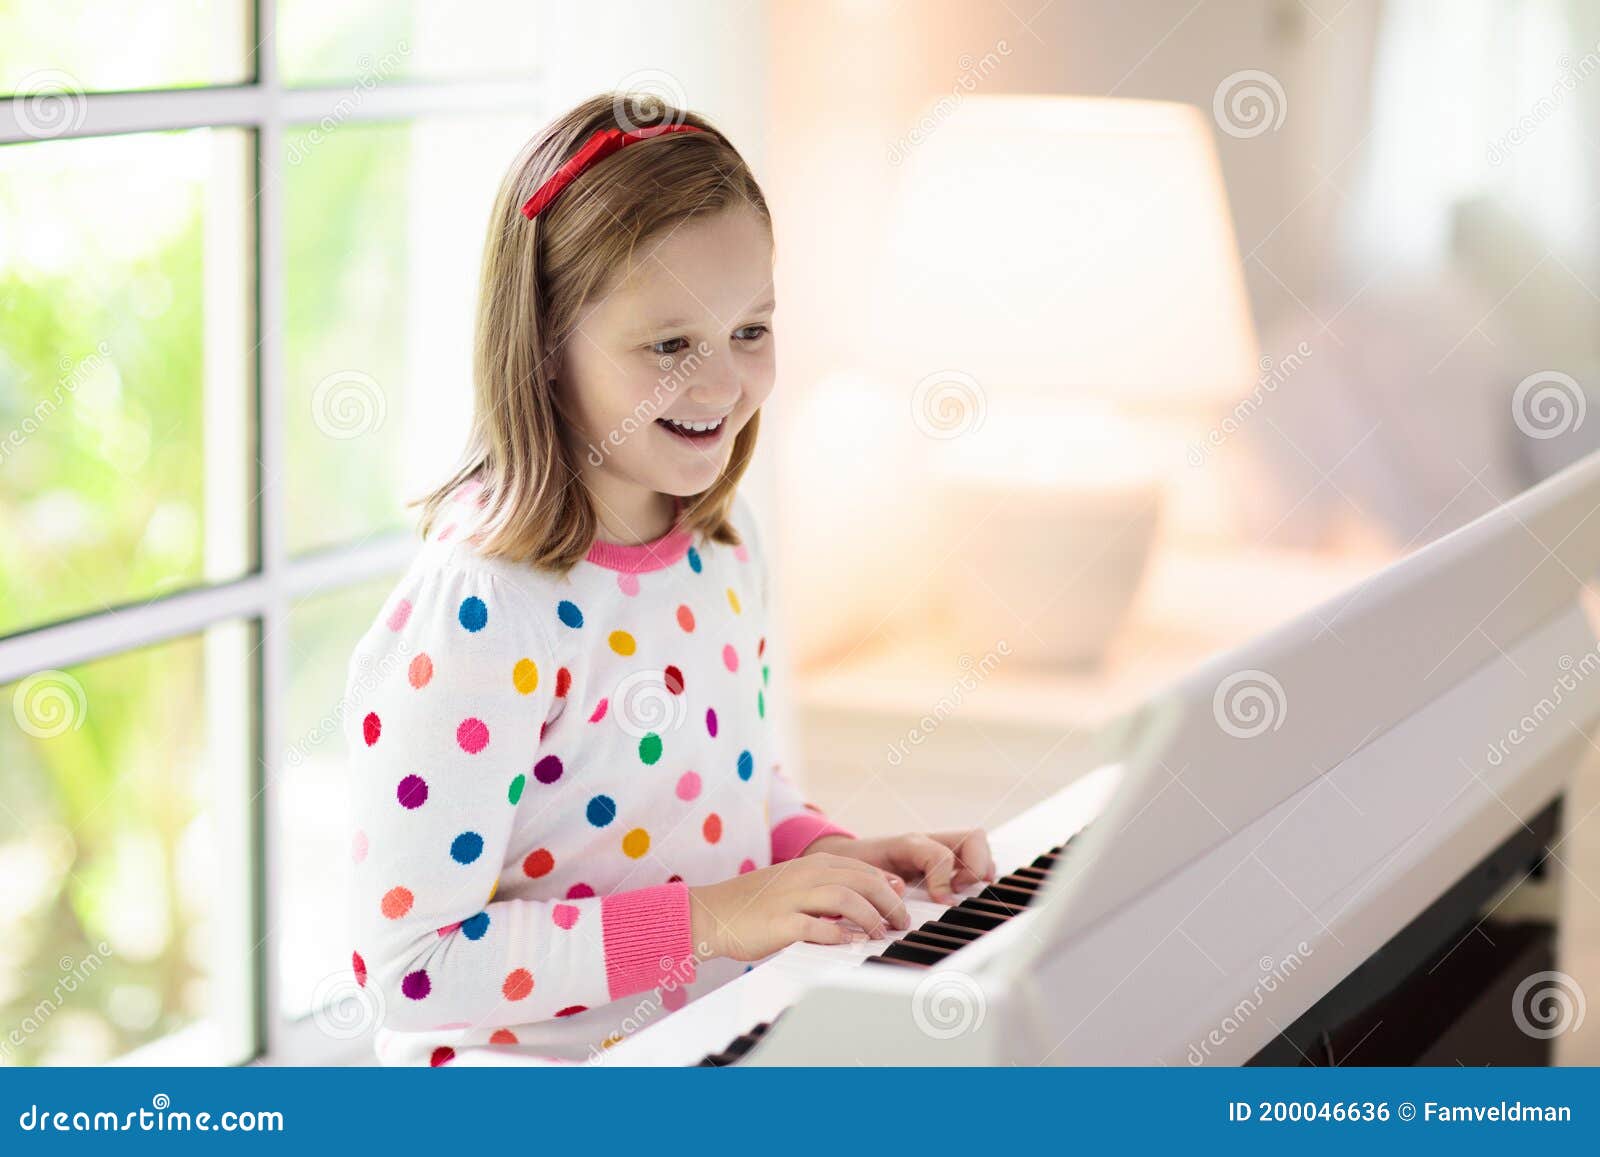 Musicas tocar em piano infantil